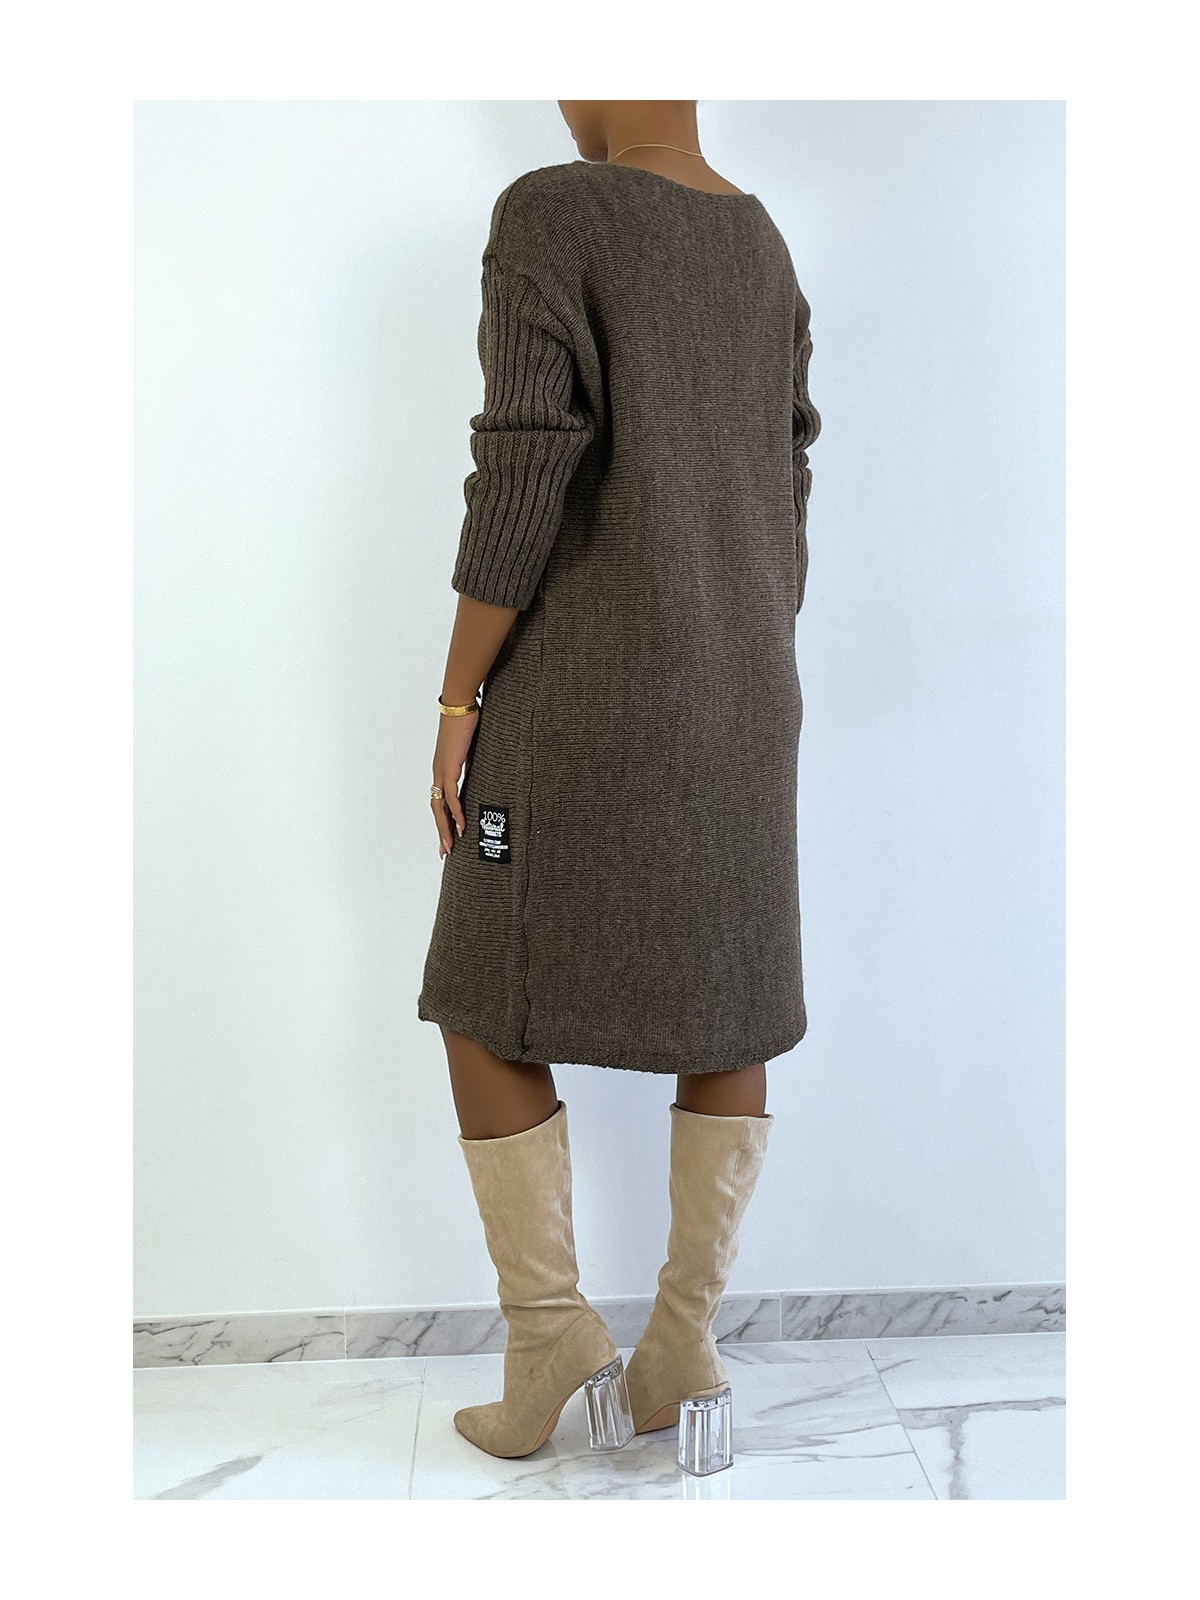 LoLLue robe pull marron composé de laine et de mohair - 4